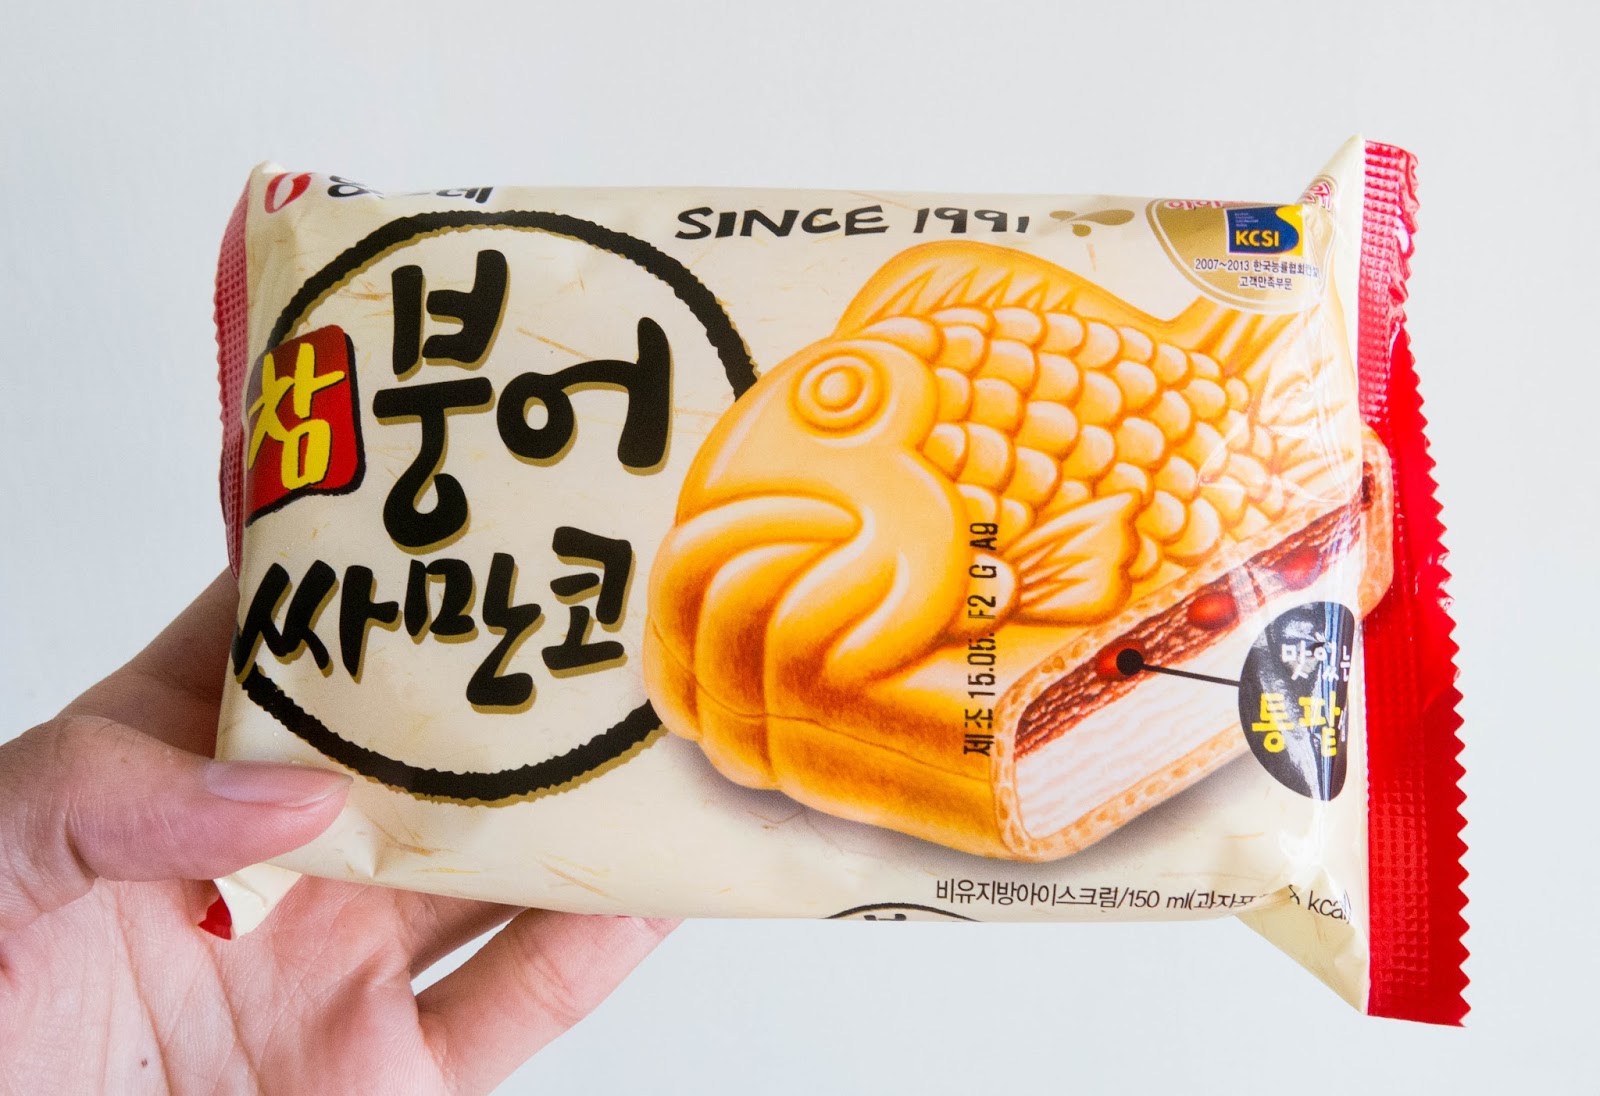 Binggrae Korean Fish Ice Cream Review